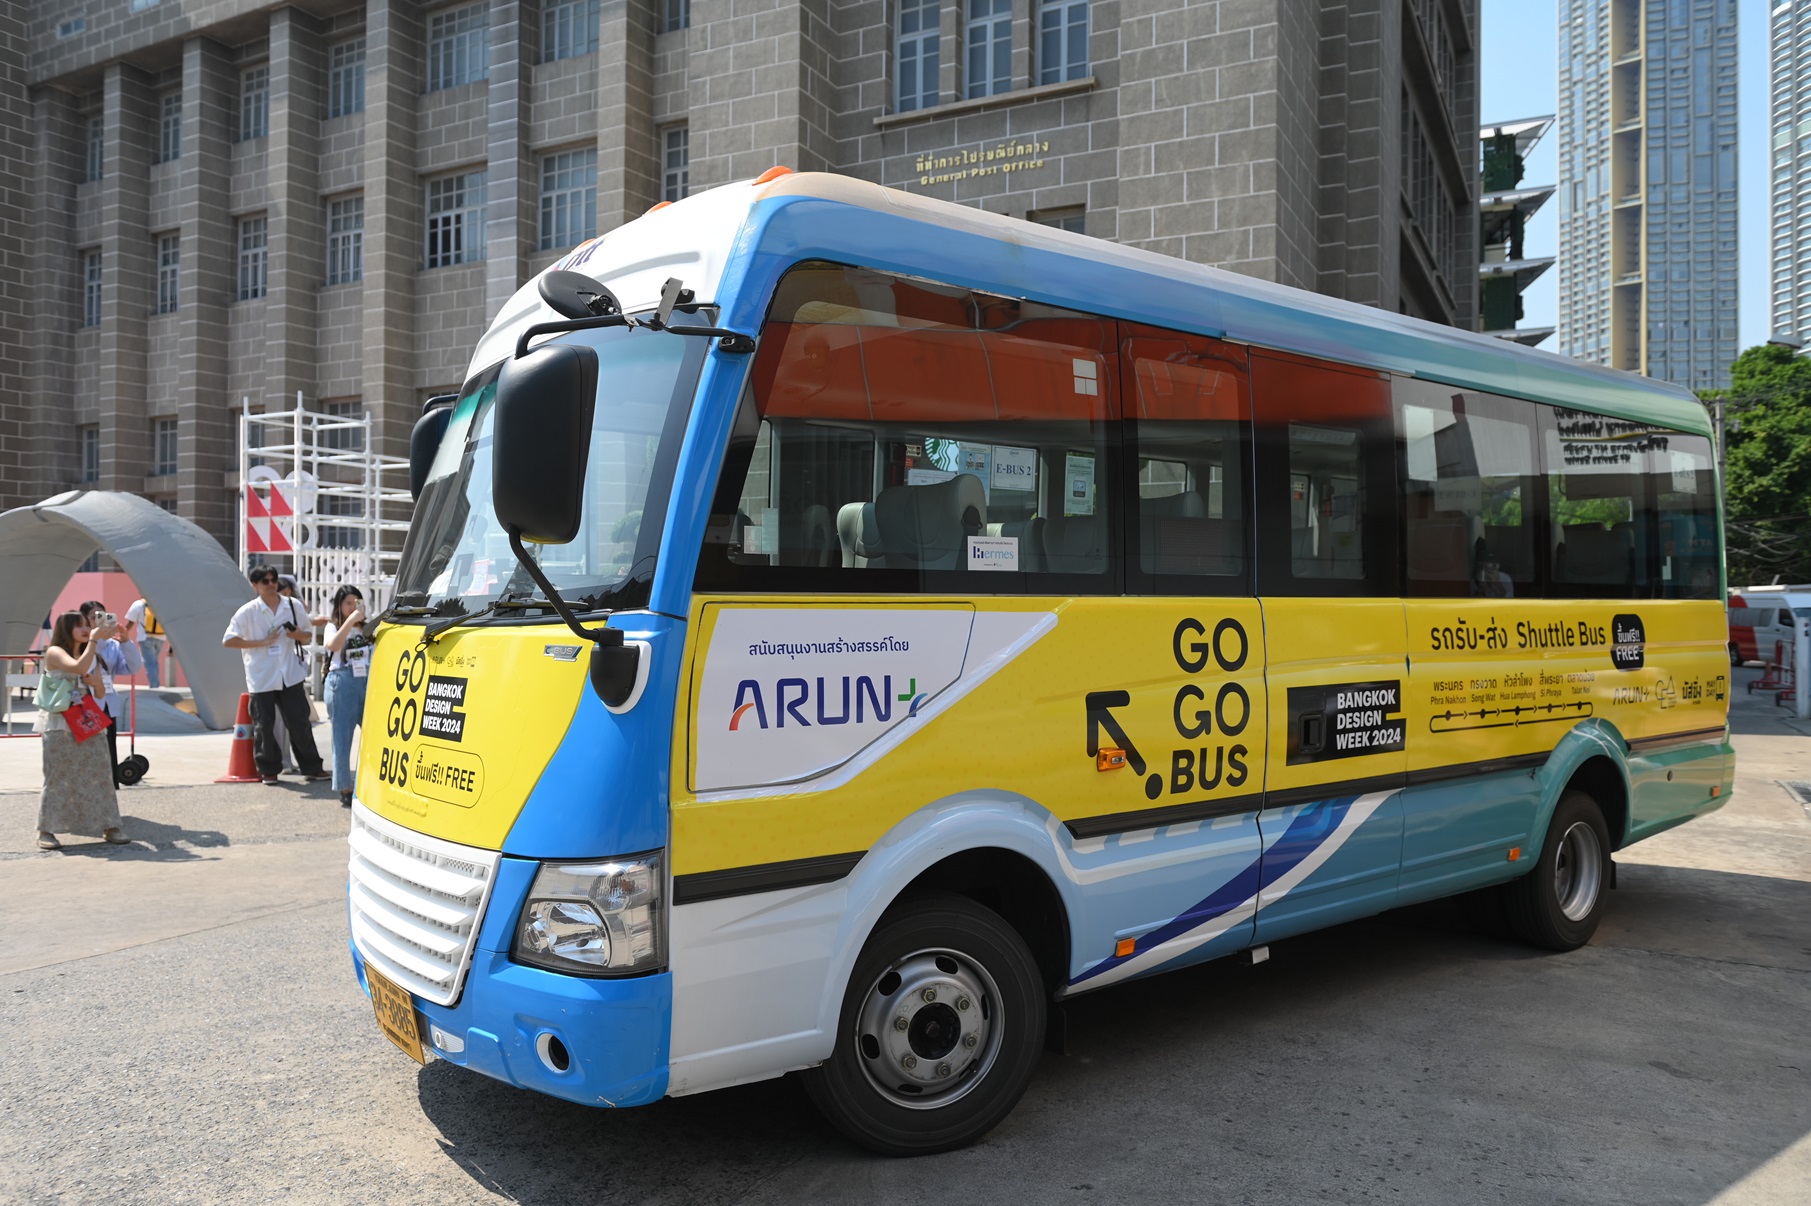 การออกแบบและพัฒนาขนส่งระดับย่าน (Public Transportation) โปรเจกต์ ‘Go Go Bus!’  Bangkok Design Week 2024 สำเร็จล้นหลาม ยกระดับขับเคลื่อนเมือง ว่าแต่จบแล้วไปไหนต่อ?